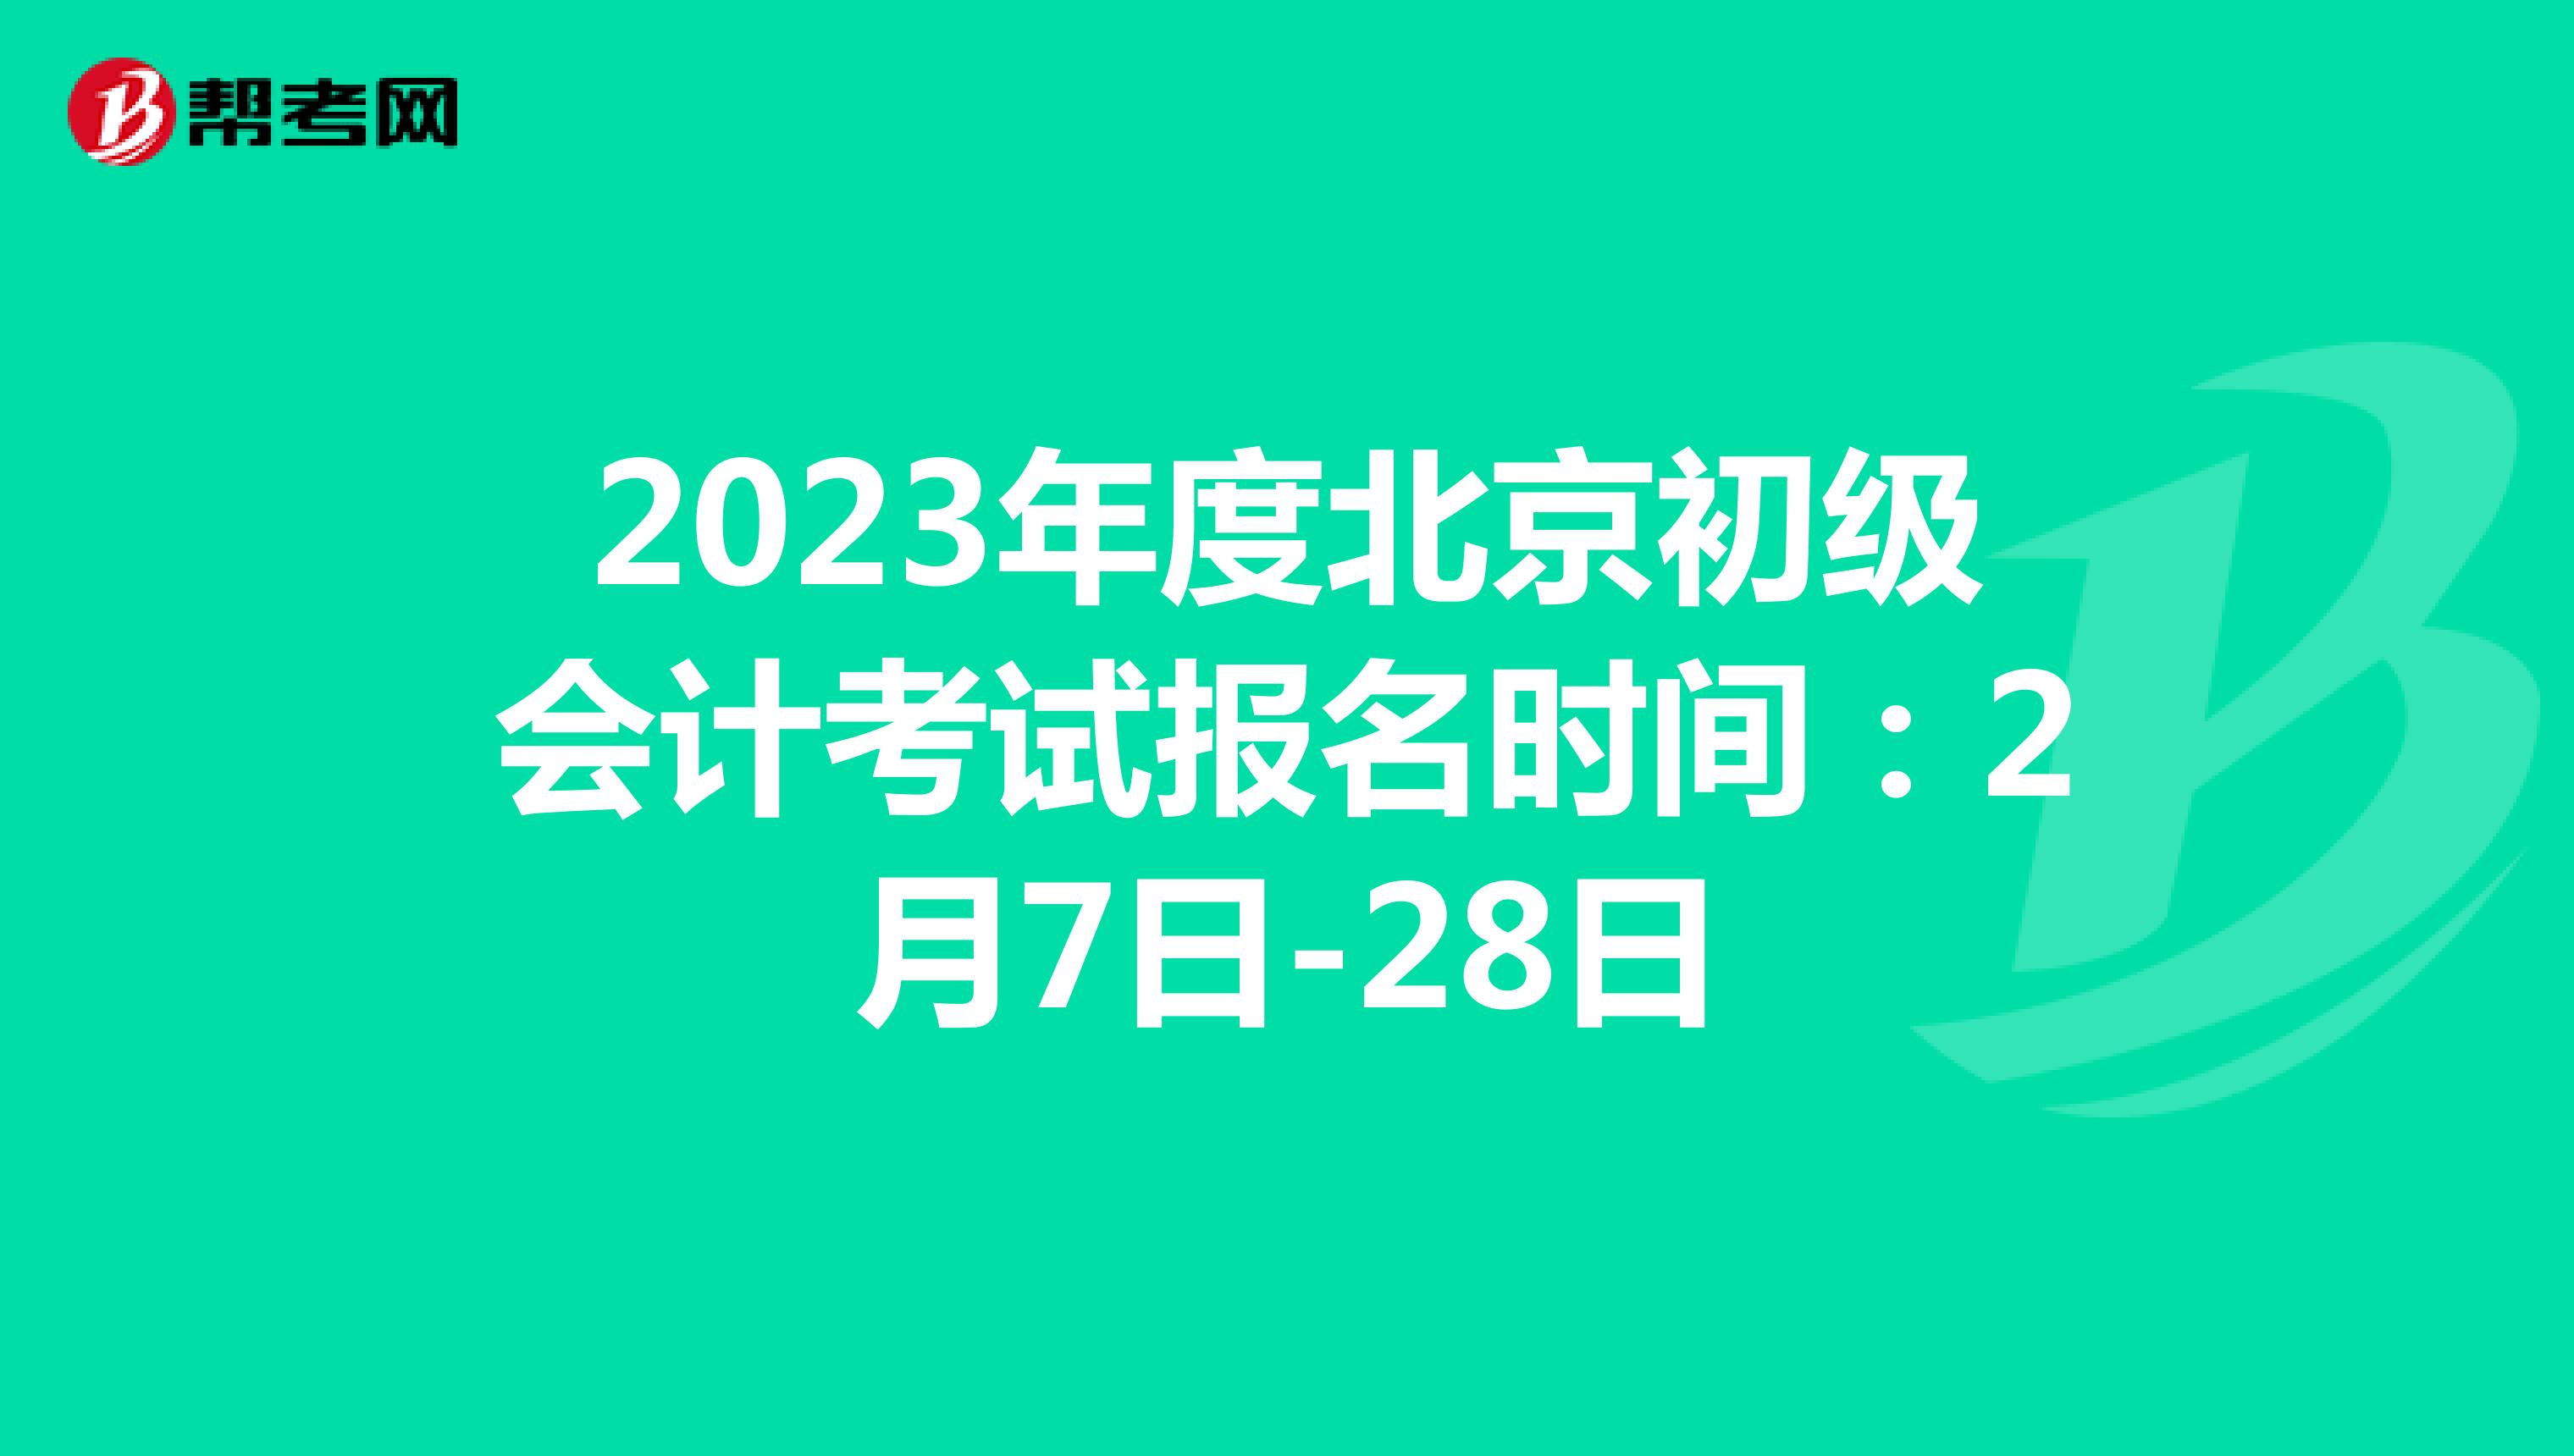 2023年度北京初级会计考试报名时间：2月7日-28日